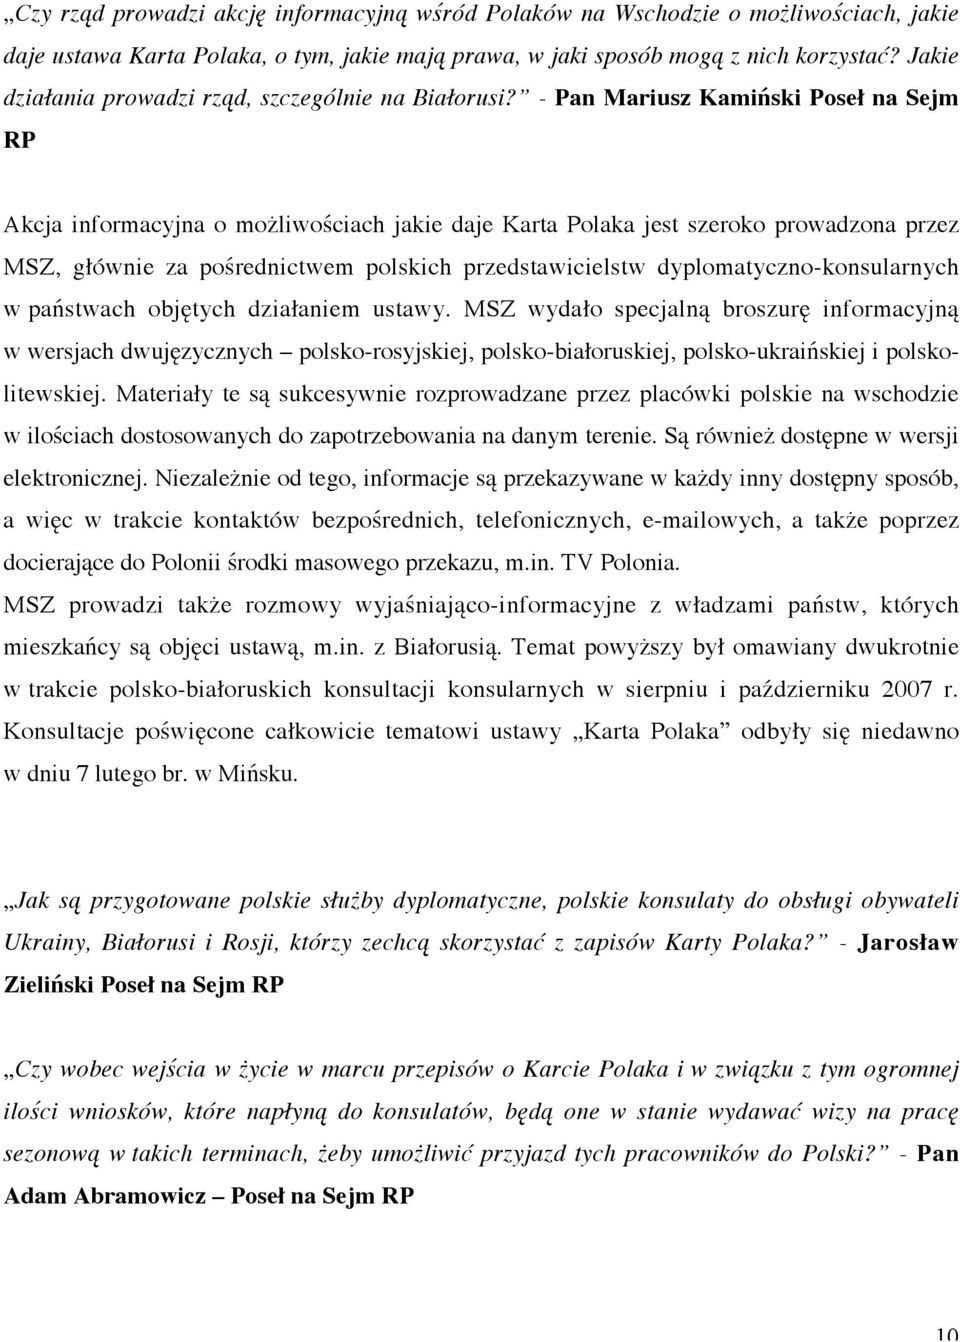 - Pan Mariusz Kamiński Poseł na Sejm RP Akcja informacyjna o możliwościach jakie daje Karta Polaka jest szeroko prowadzona przez MSZ, głównie za pośrednictwem polskich przedstawicielstw